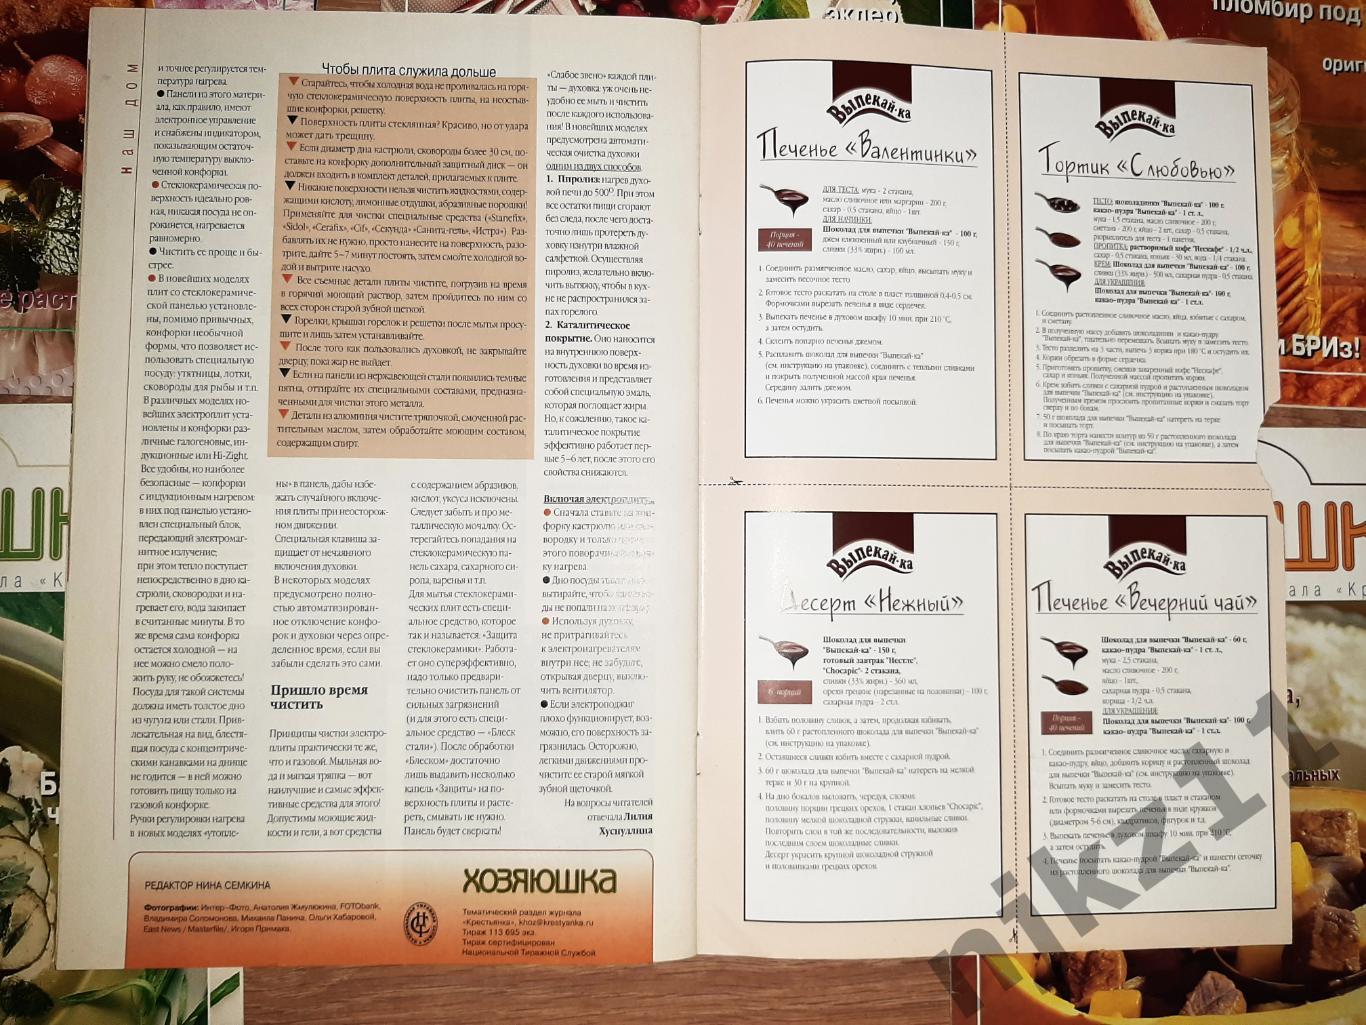 7 журналов ХОЗЯЮШКА приложение к Крестьянке 2001-03г.г. рецепты блюд 3